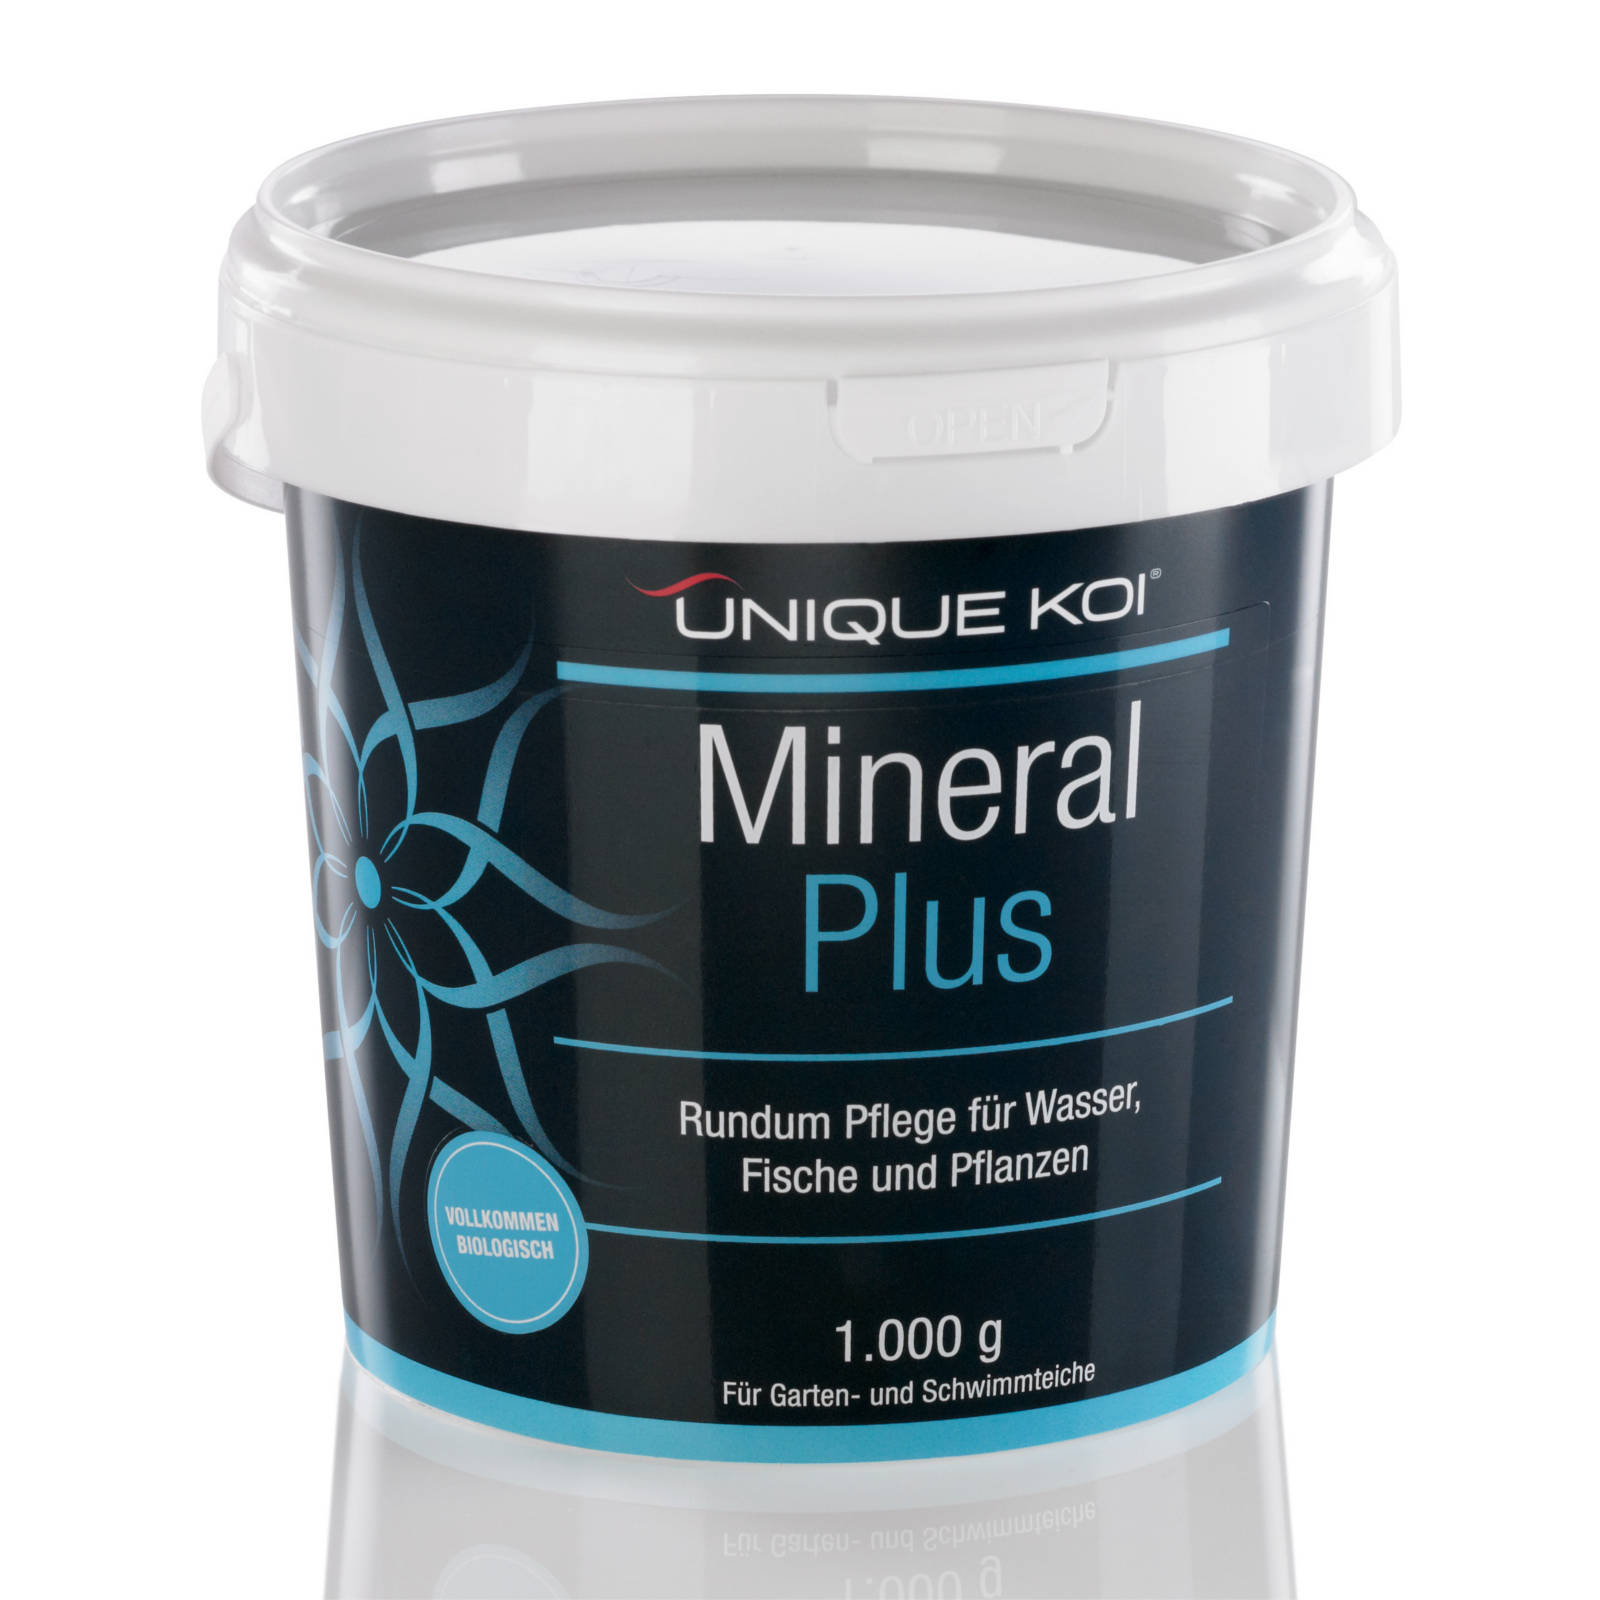 Unique Koi Mineral Plus Rundum Pflege für Wasser, Fische und Pflanzen 1000g